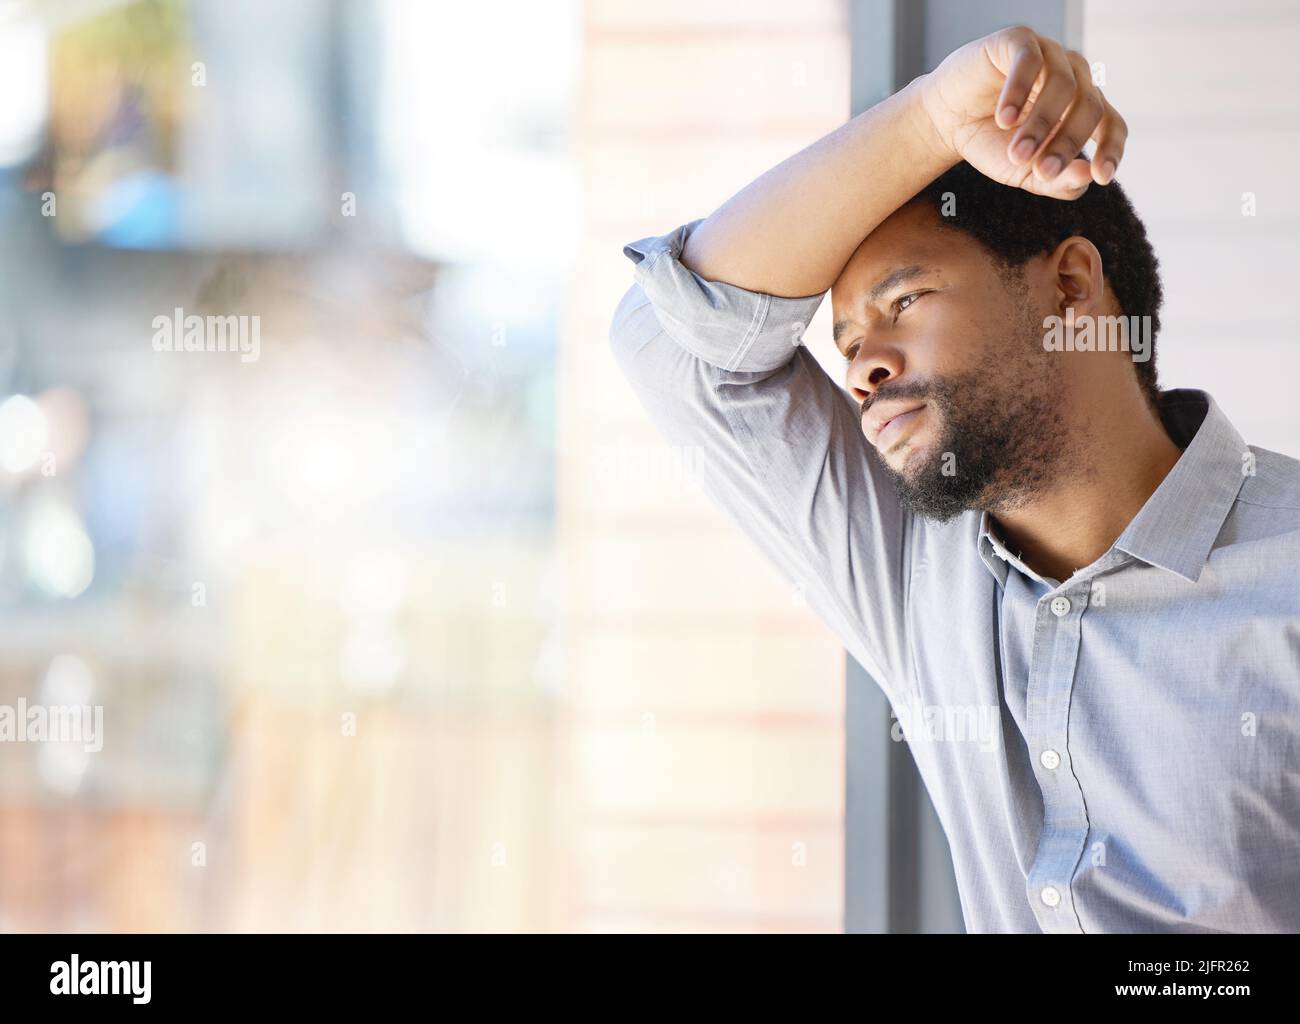 Zu viel zu tun, zu viel zu betonen. Aufnahme eines jungen Geschäftsmannes, der gestresst vor einem Fenster in einem Büro steht. Stockfoto